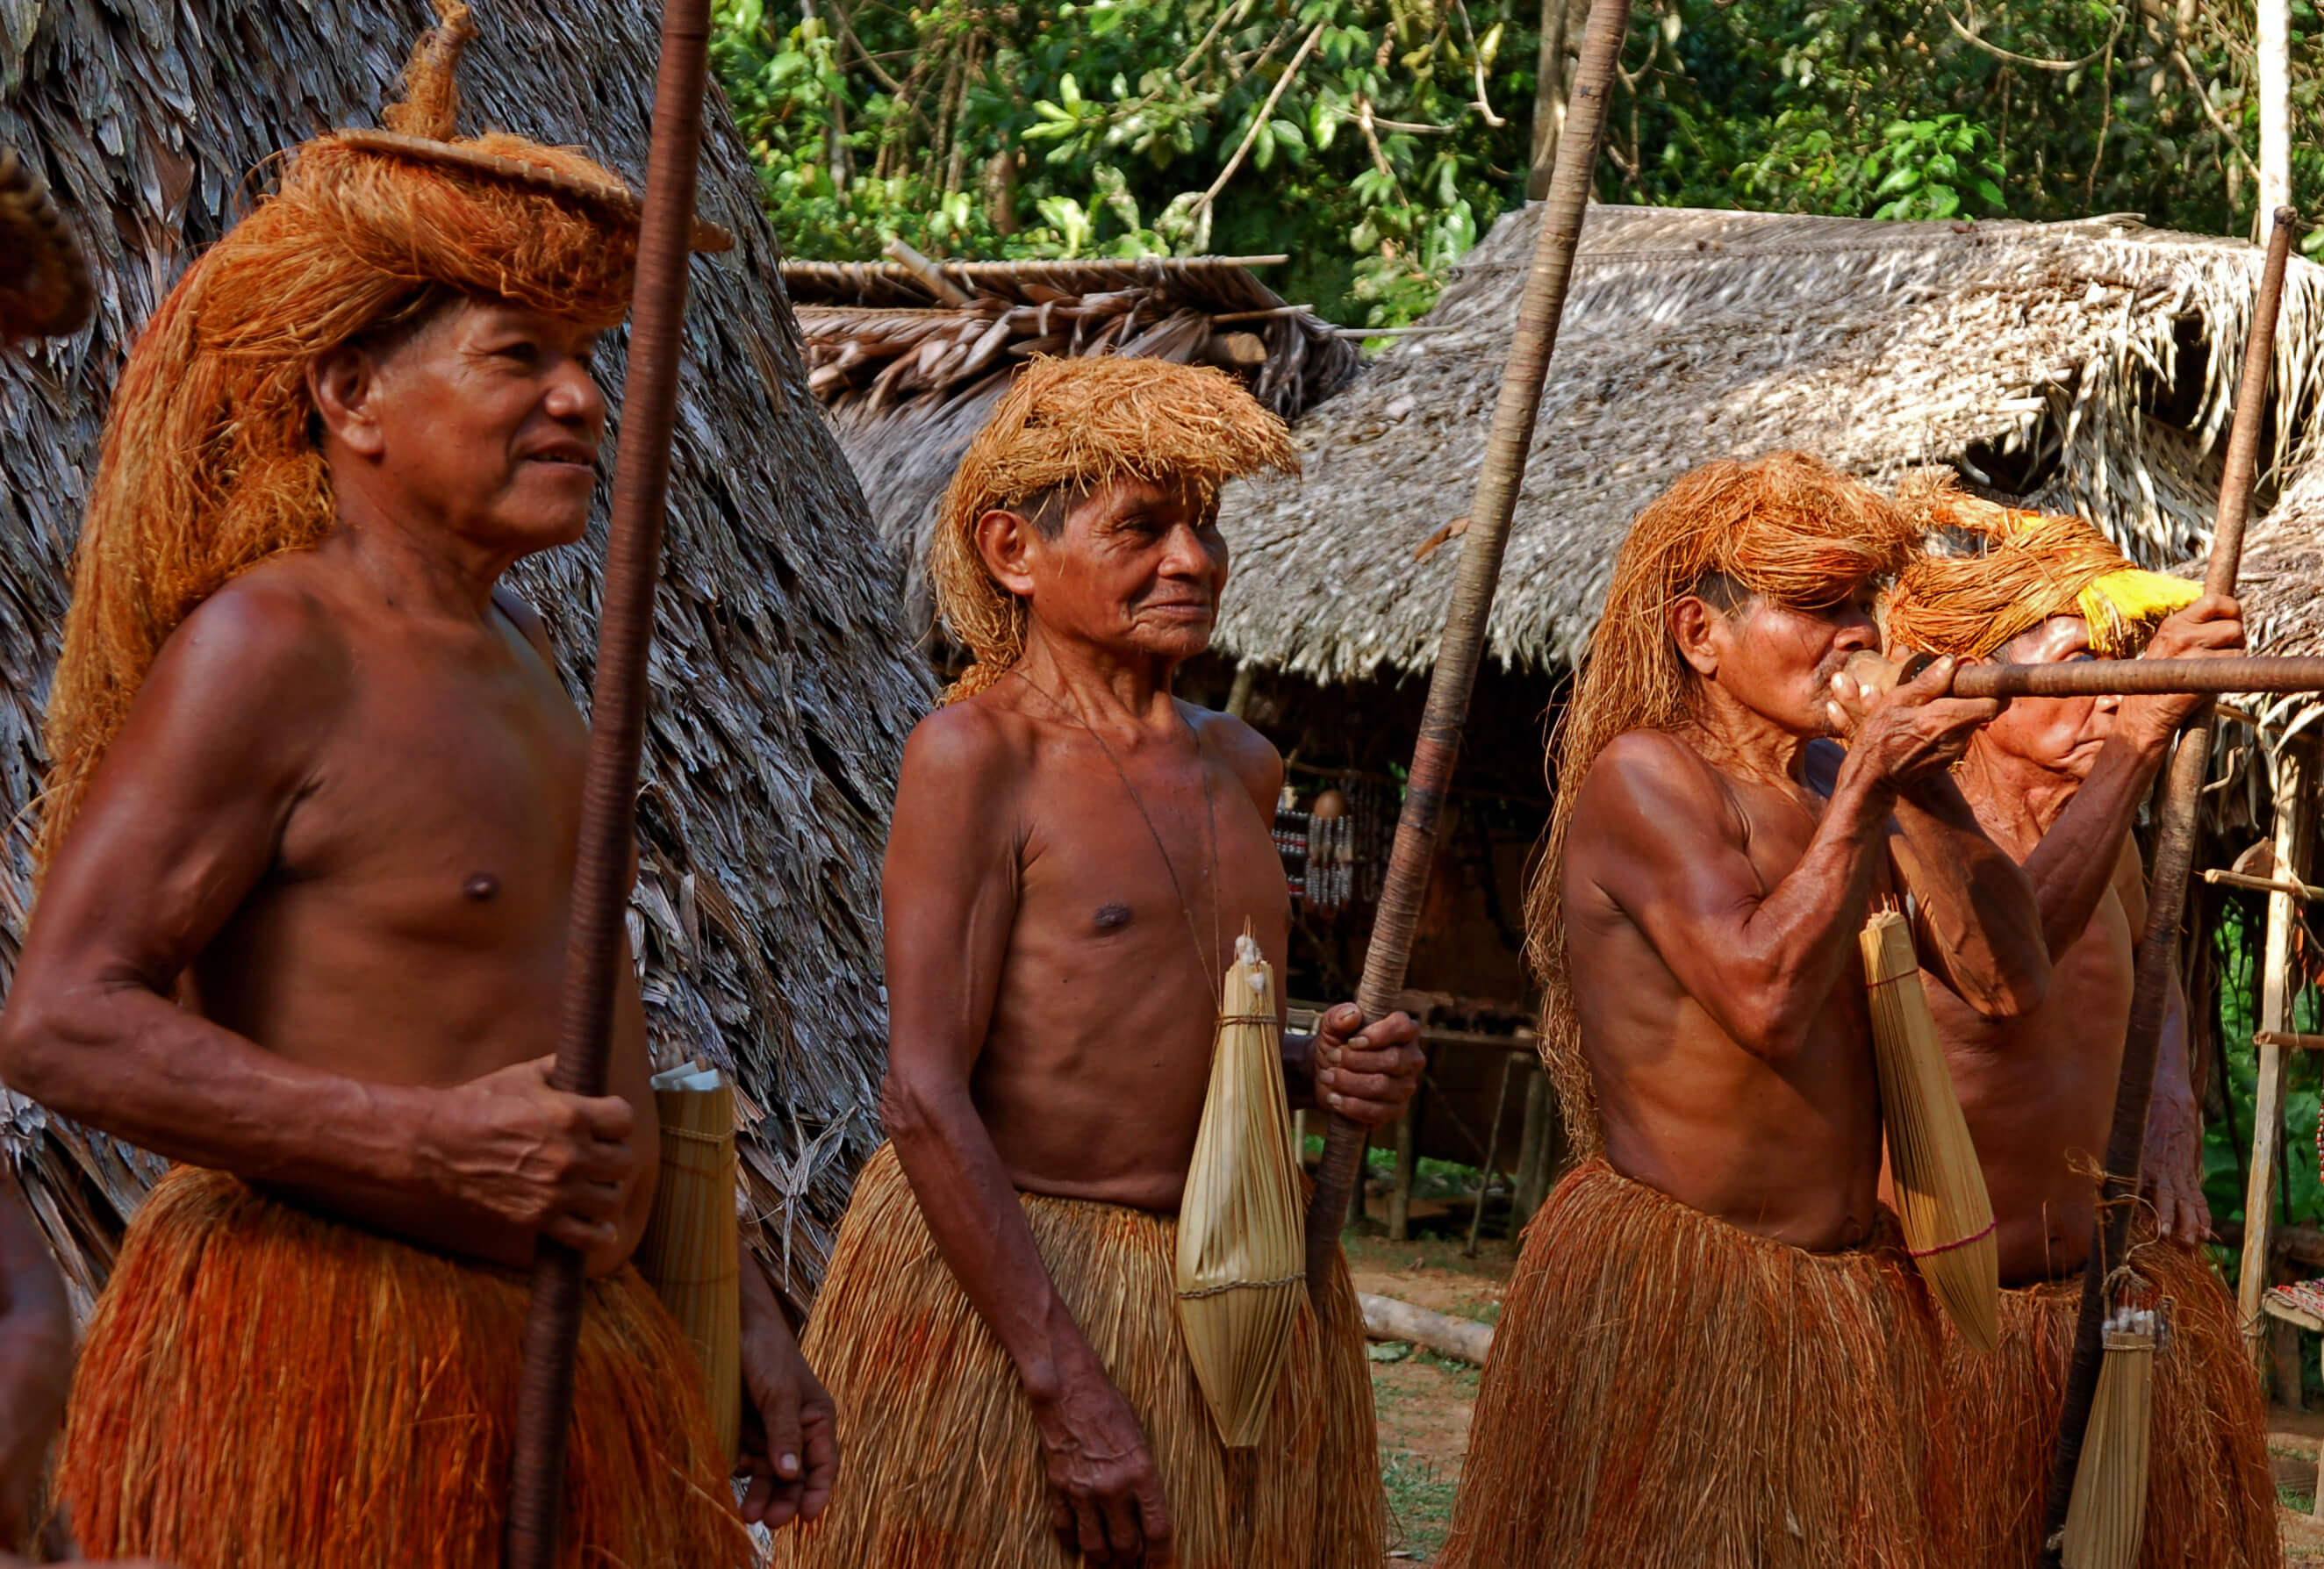 De 'Yagua' (een inheemse stam) in het Amazonegebied tijdens een ritueel in 2006. © Flickr / Chany Crystal. 